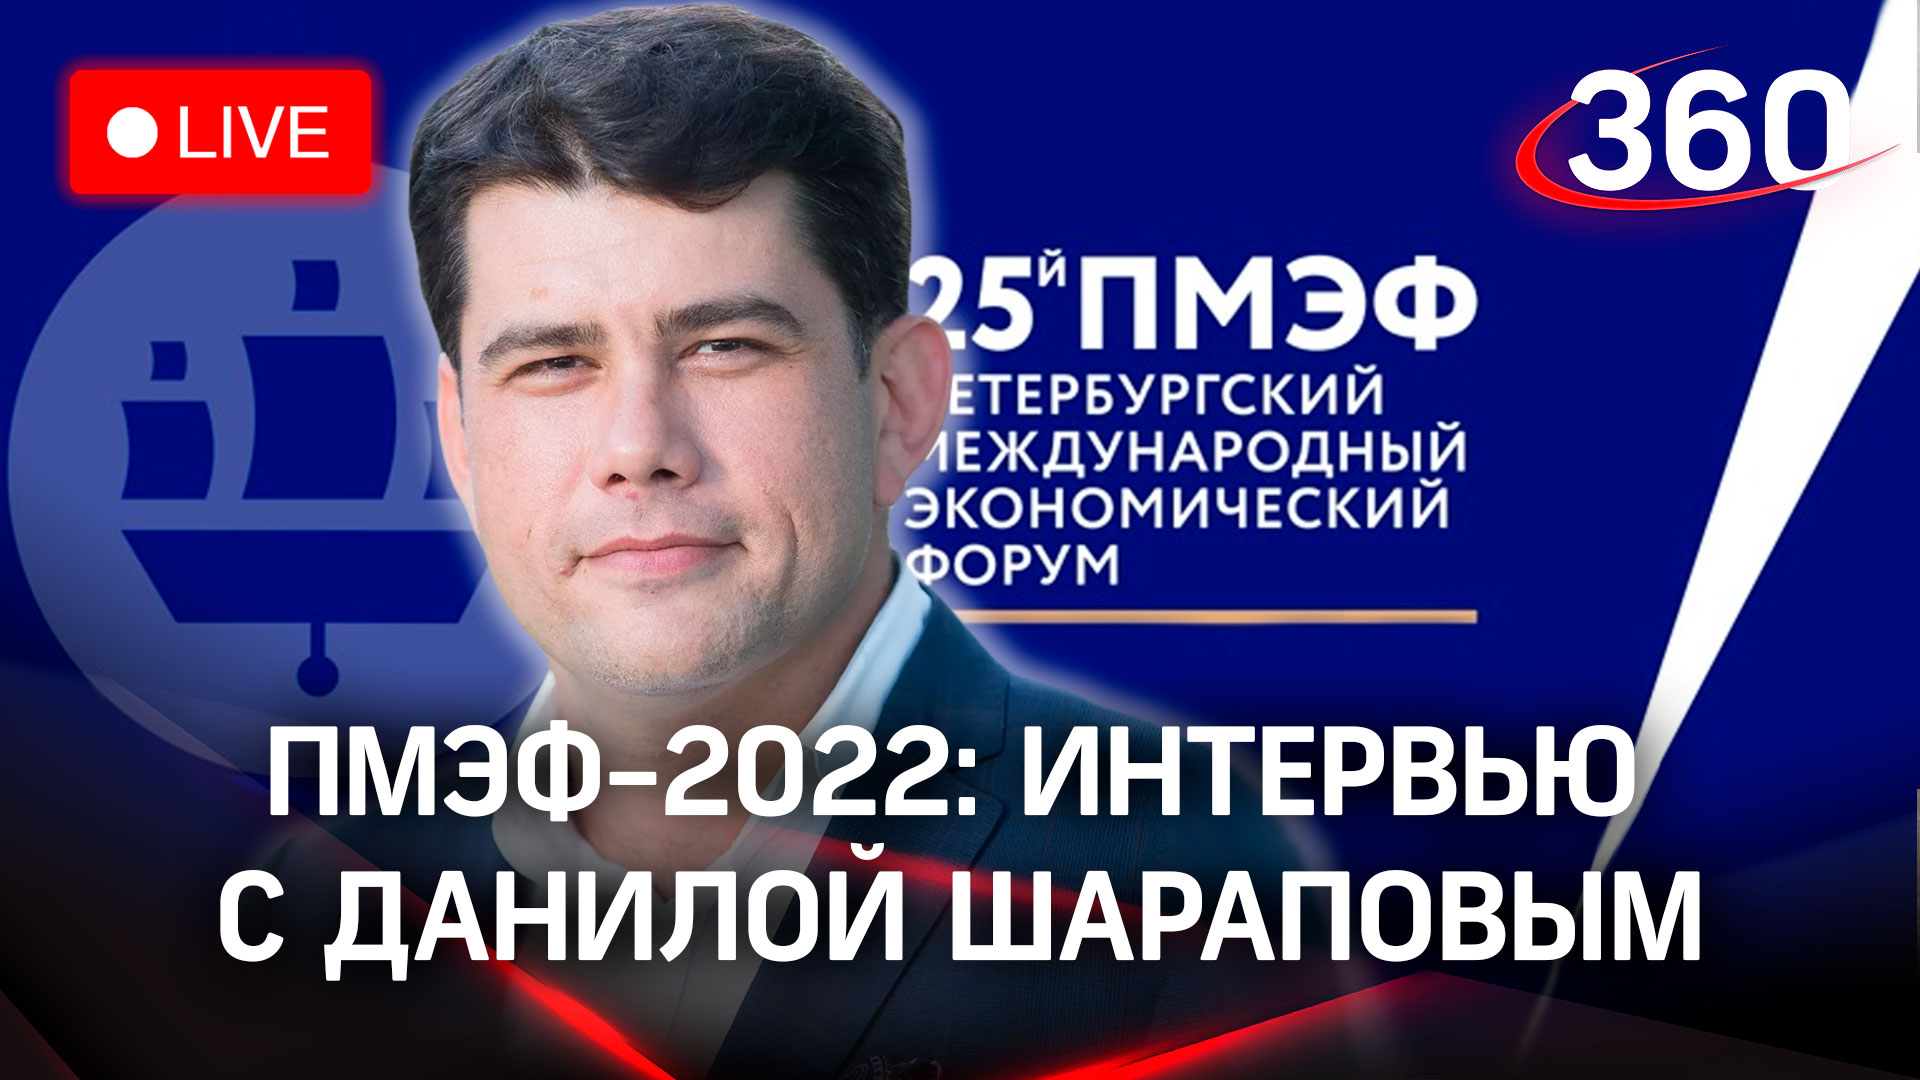 ПМЭФ-2022: интервью с Данилой Шараповым, генеральным директором кинокомпании «Медиаслово»